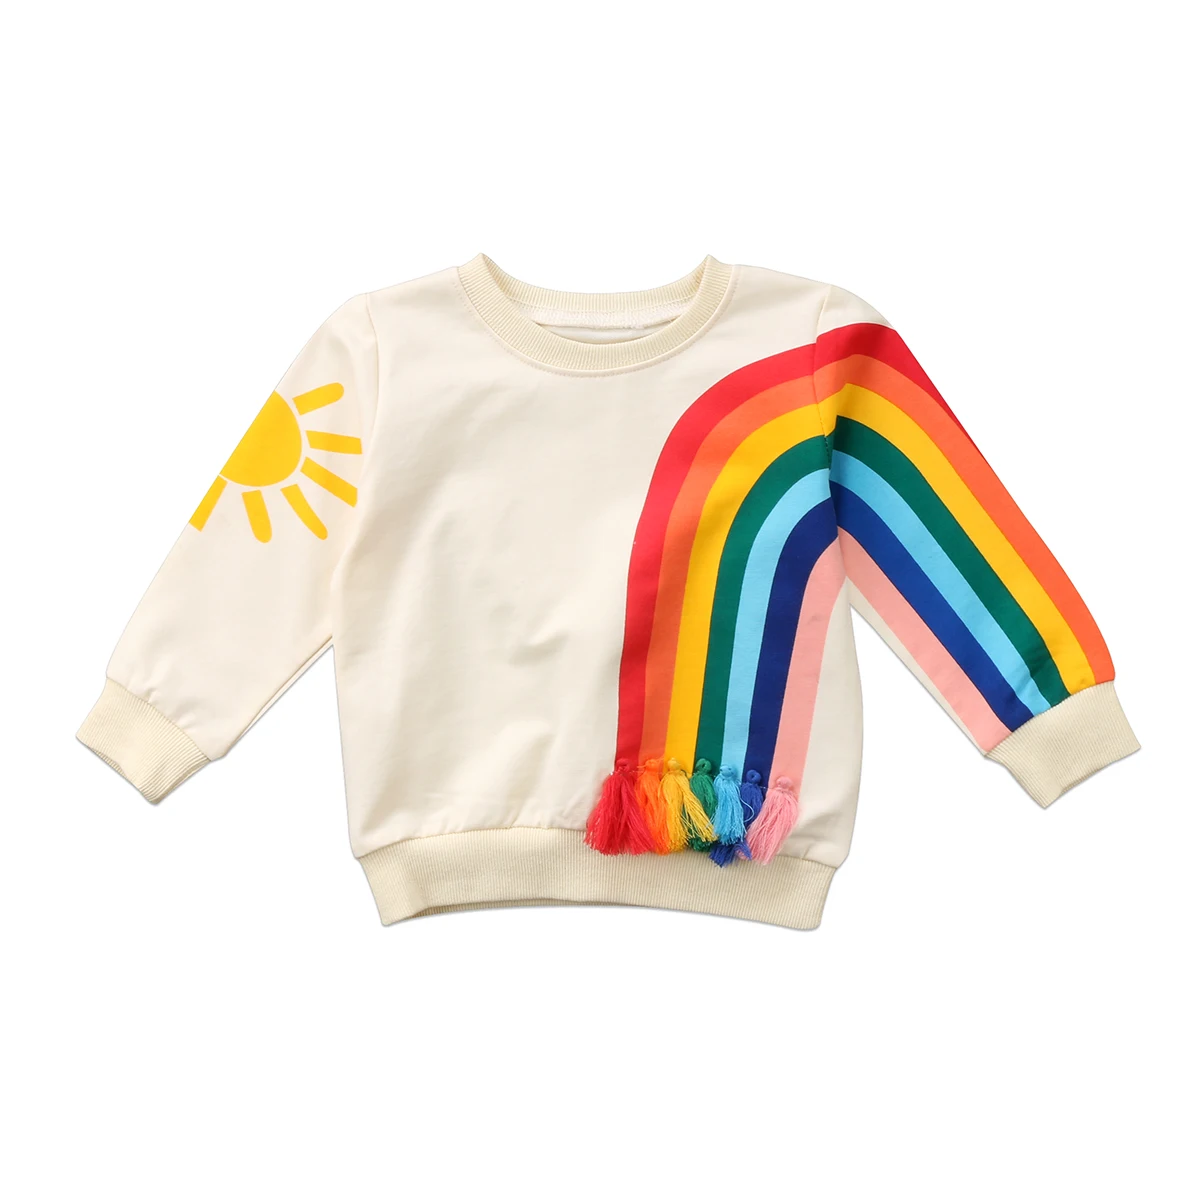 Г. Детская футболка с длинными рукавами для девочек, Осень-зима, Детская футболка с рисунком радуги, розового цвета для девочек 1-6 лет